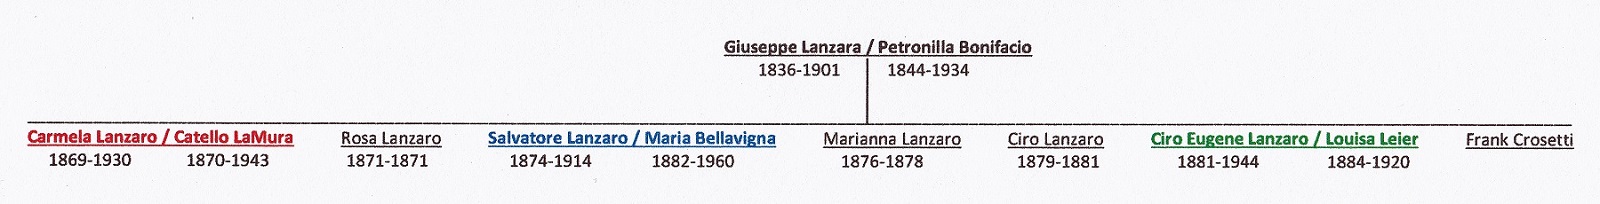 Giuseppe Lanzara Descendant Chart 1